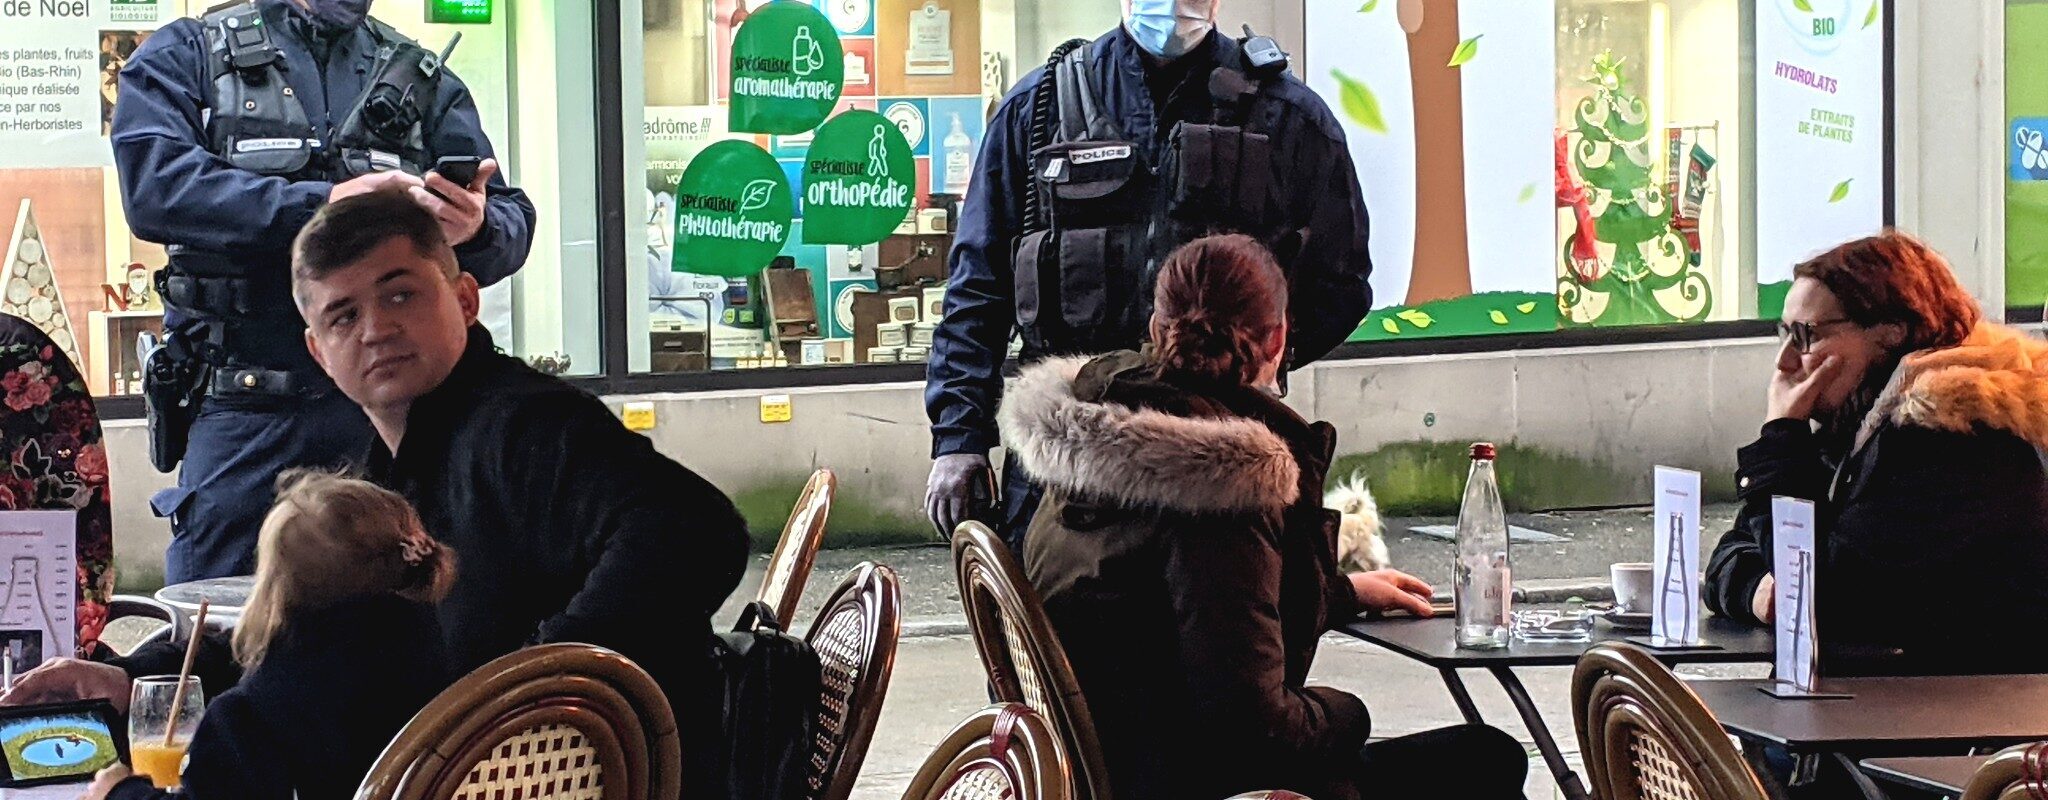 Bars et restaurants fermés plus tôt, couvre-feu… Les mesures sanitaires et sécuritaires pour le Nouvel an à Strasbourg